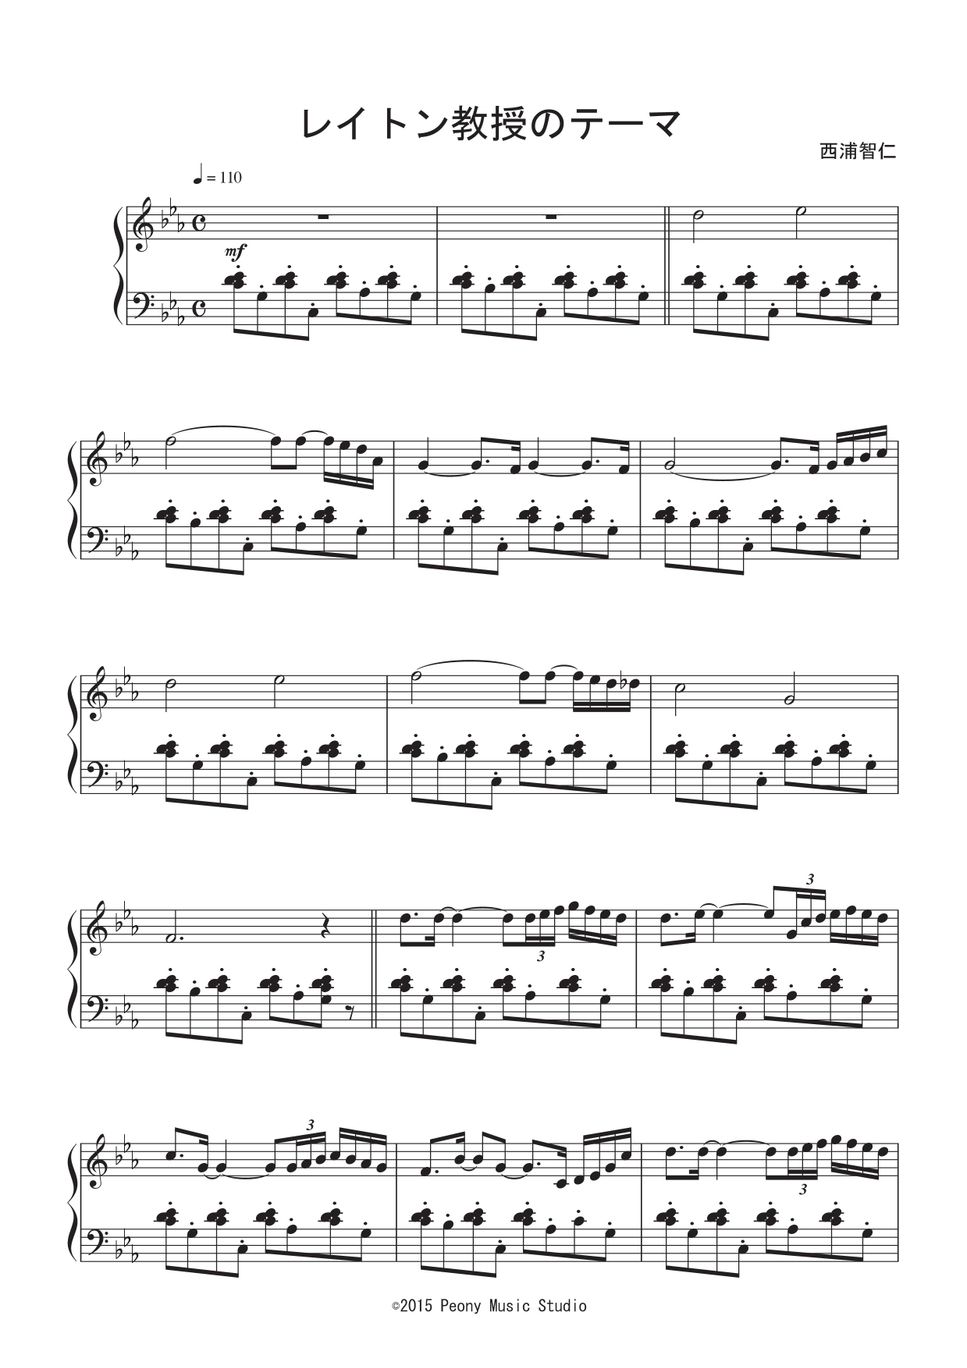 レイトン教授 ピアノ楽譜 - 楽器/器材